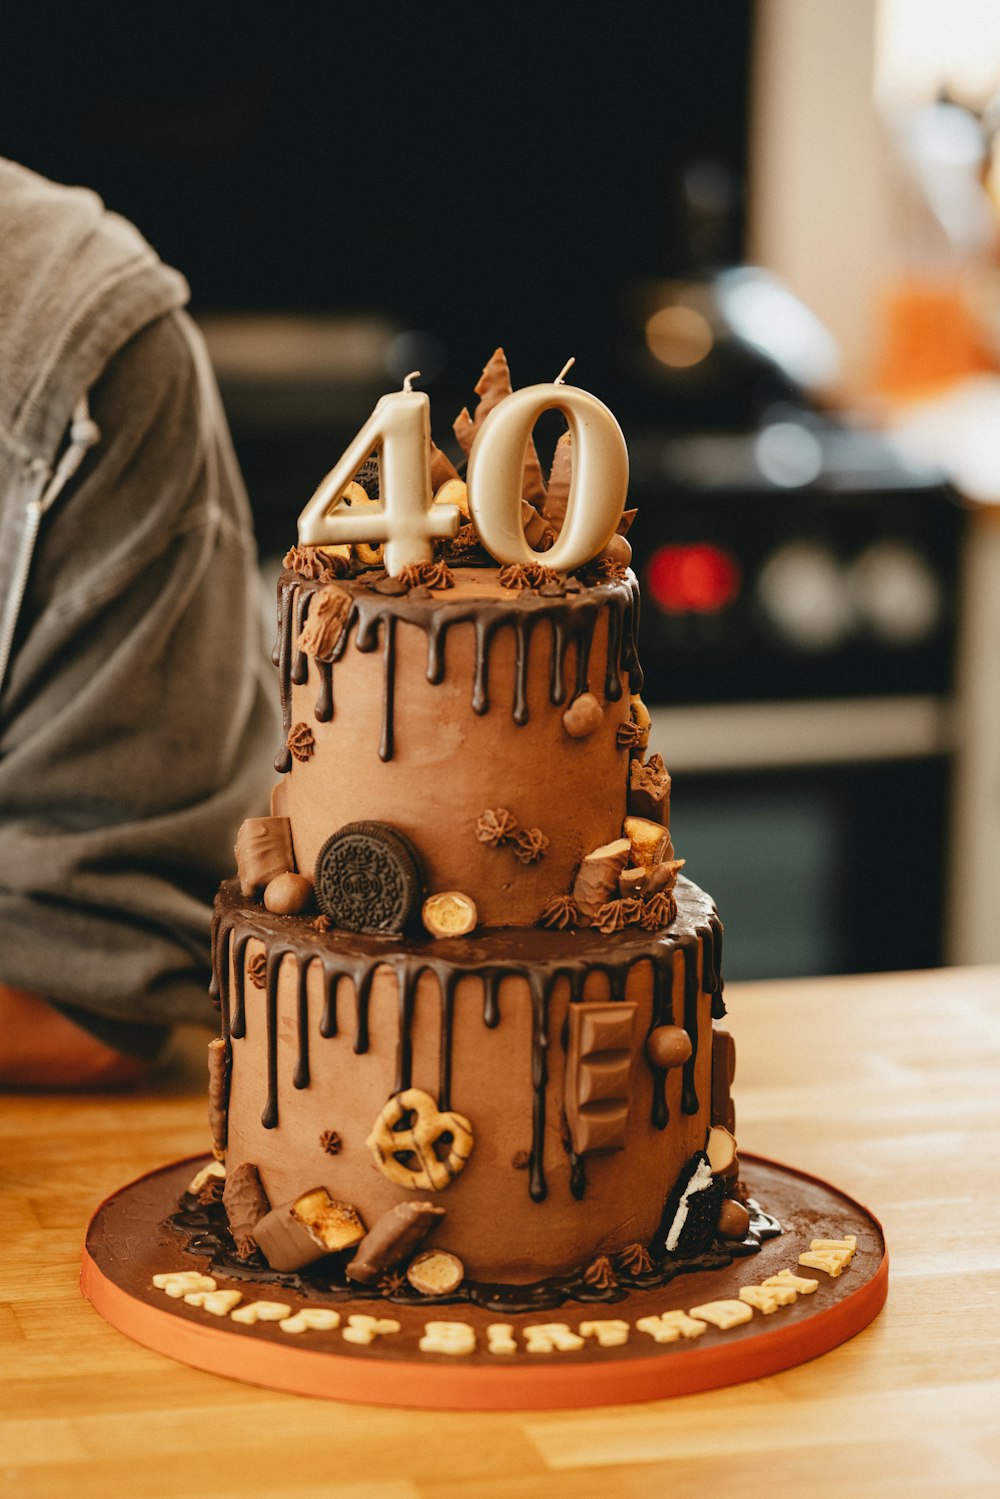 cupcake de cerâmica marrom com cobertura branca no topo